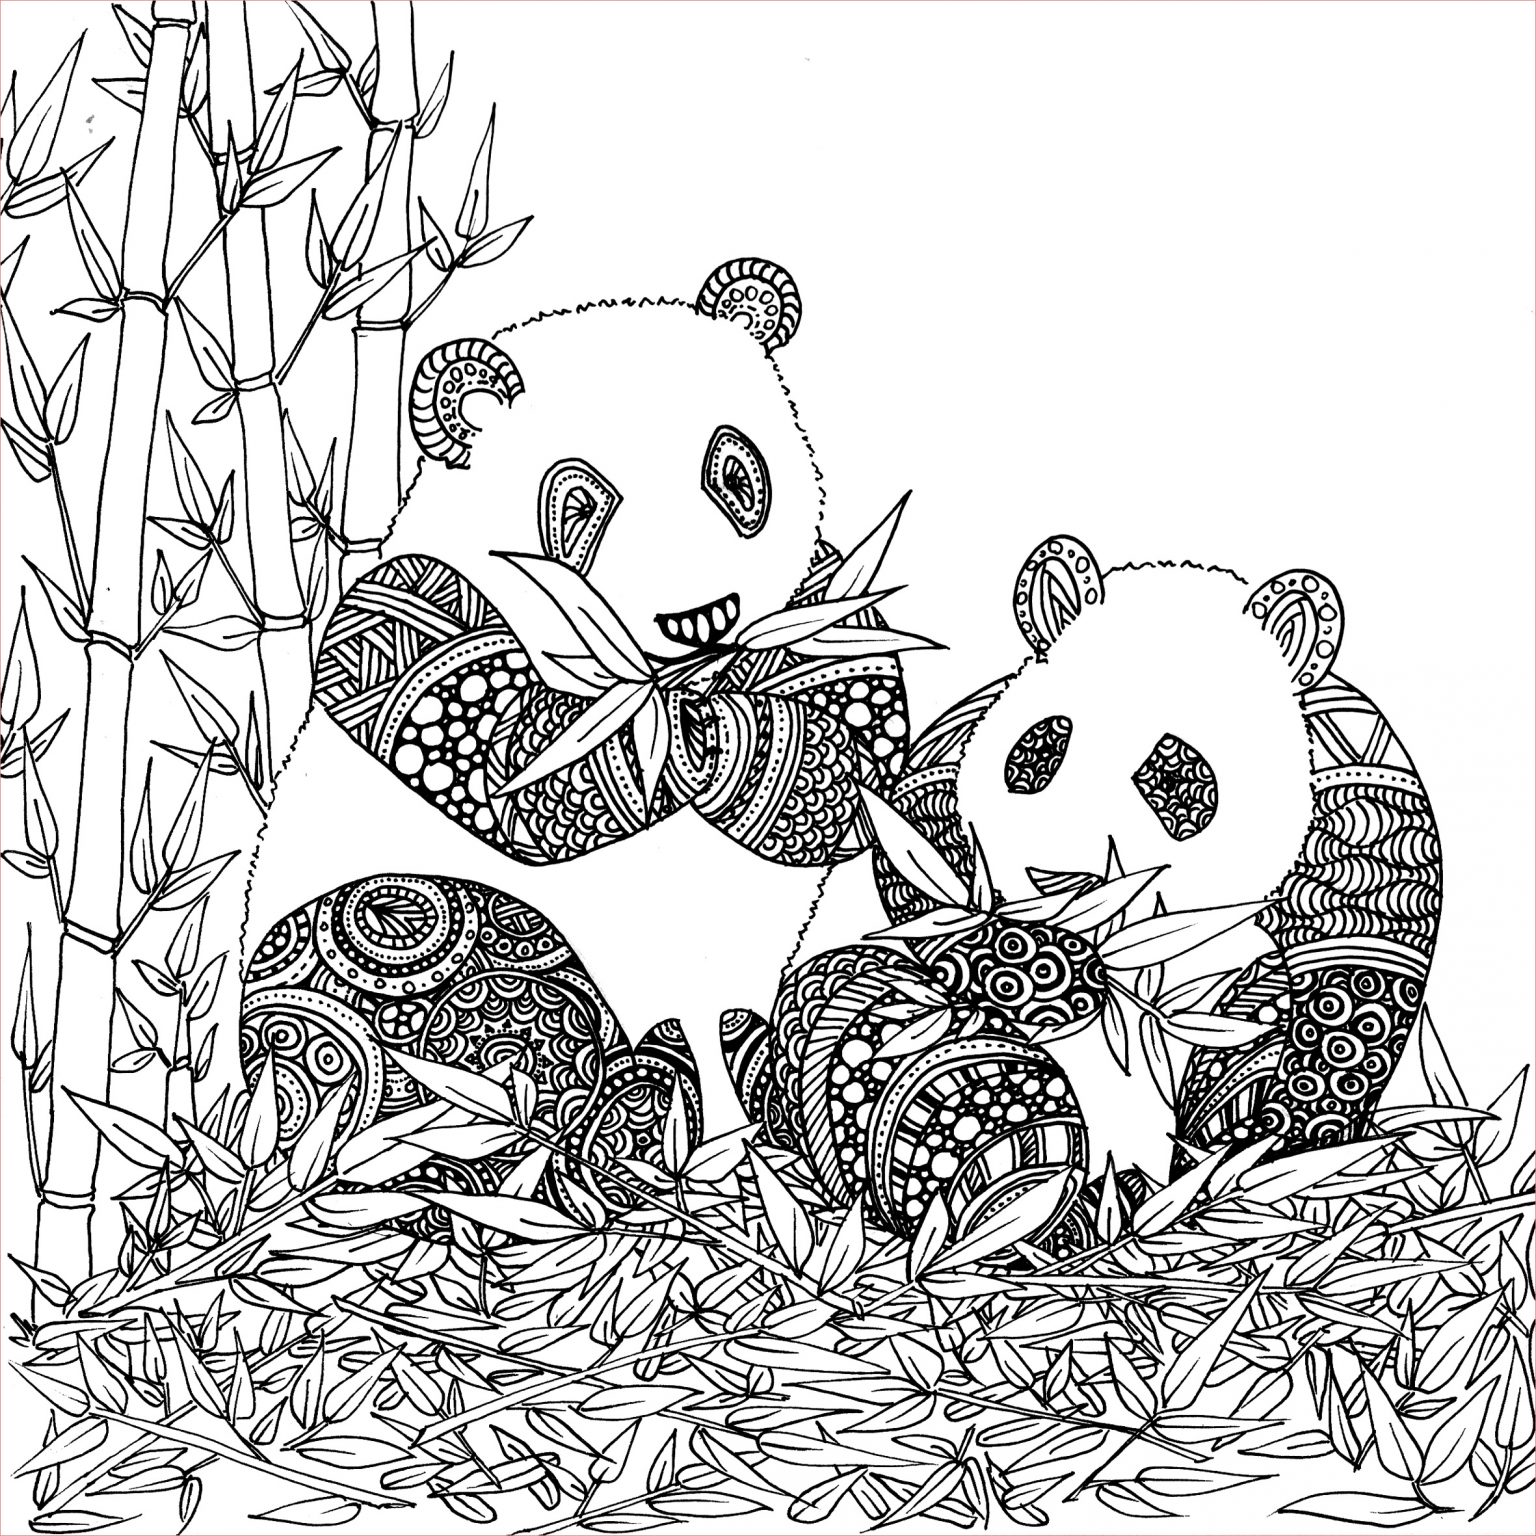 Coloriage Panda À Imprimer Nice Coloriage De Animaux Panda à Imprimer Par Chocobo